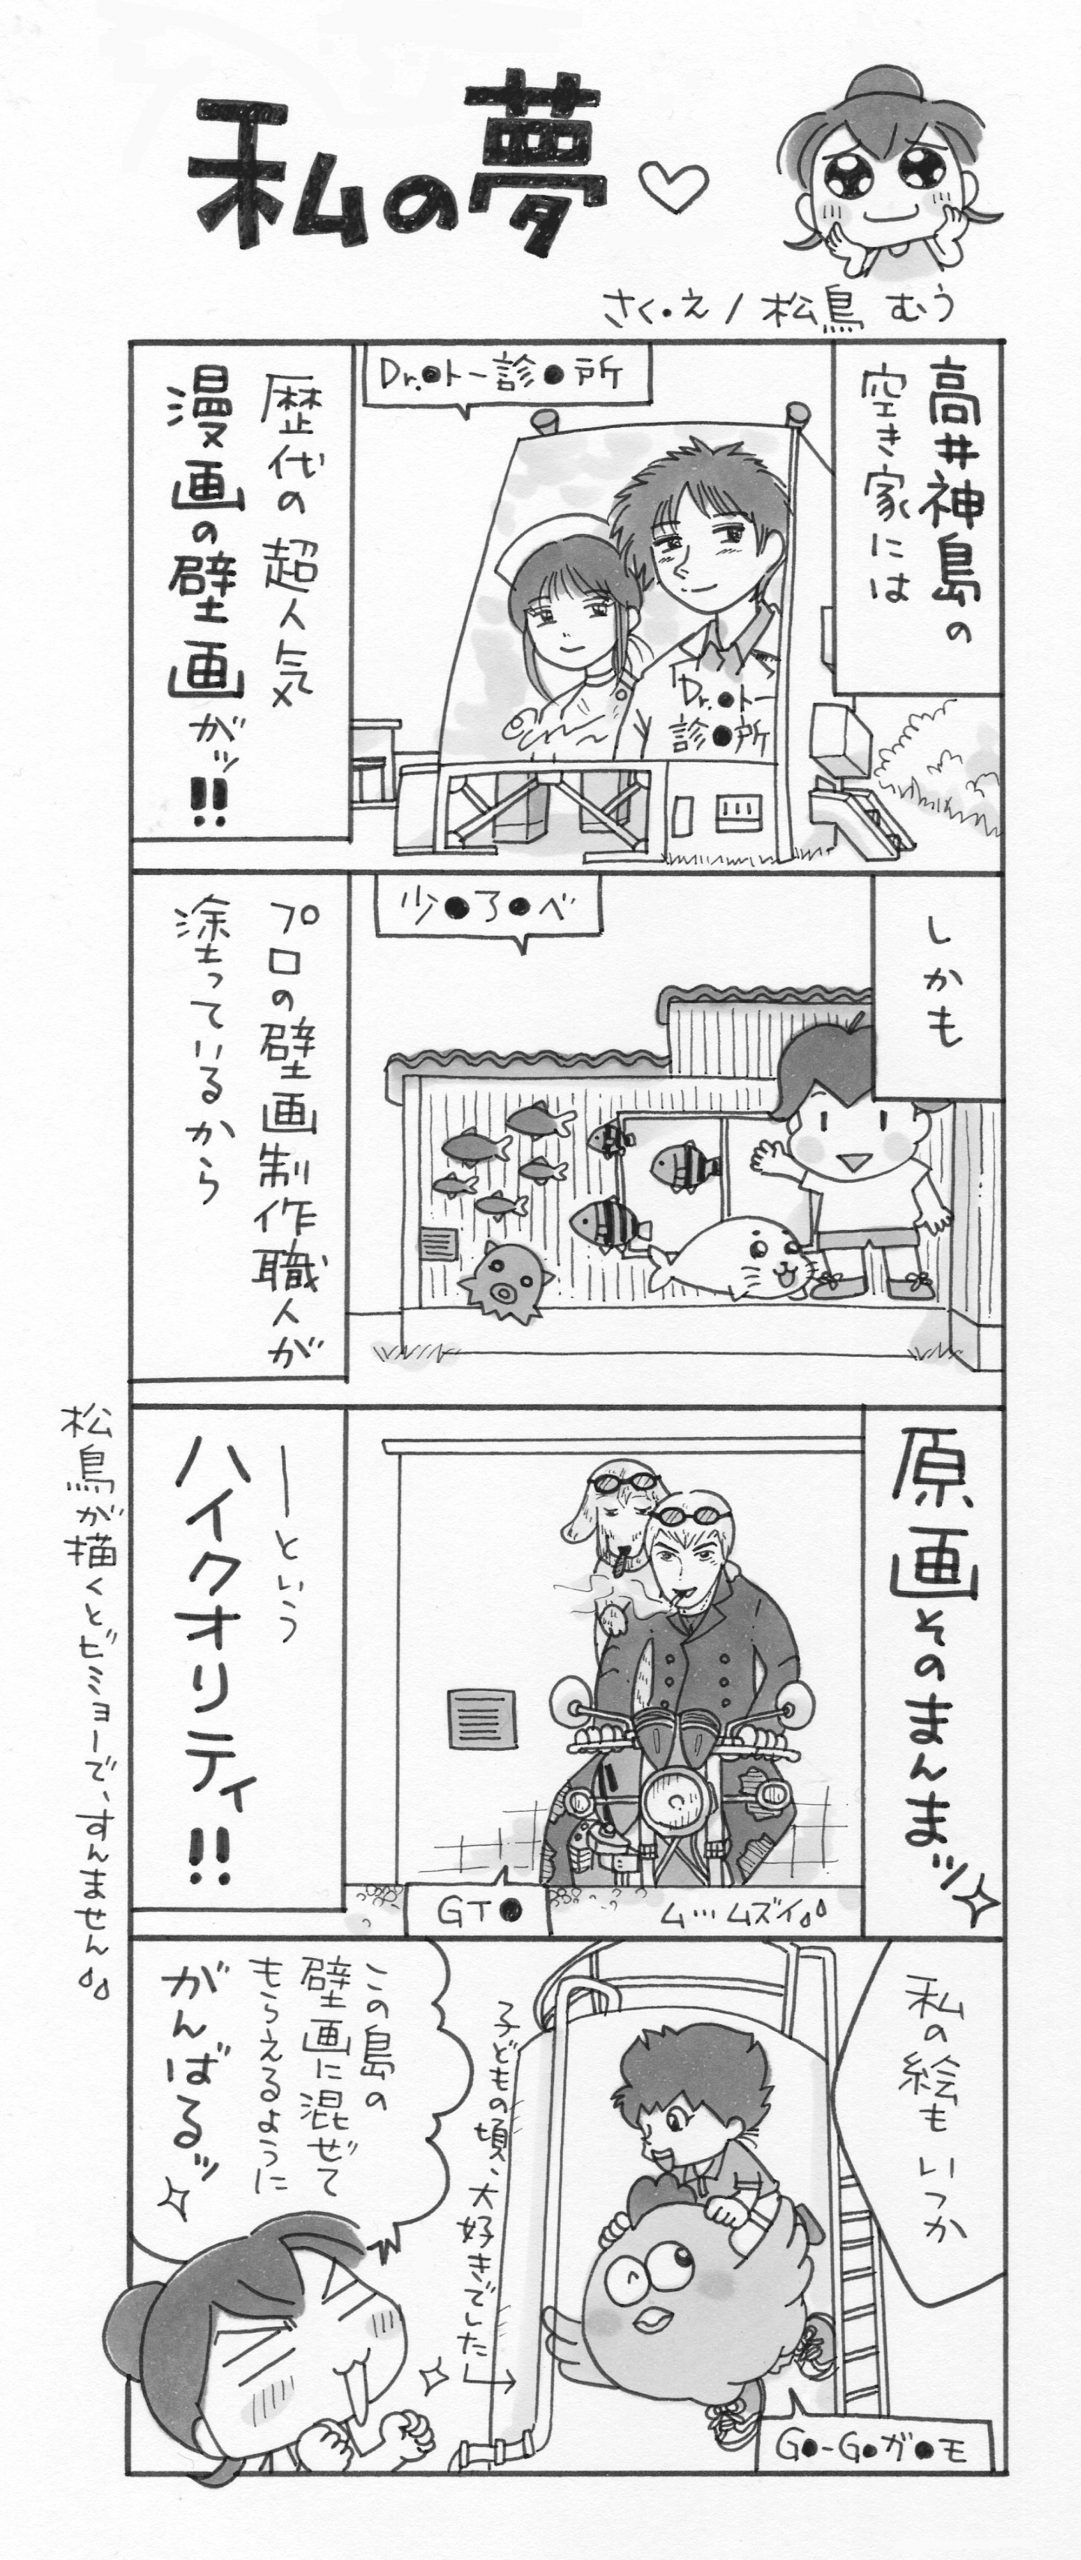 4コマ漫画 島旅是好日 10 私の夢 寄稿 松鳥むう Ritokei 離島経済新聞